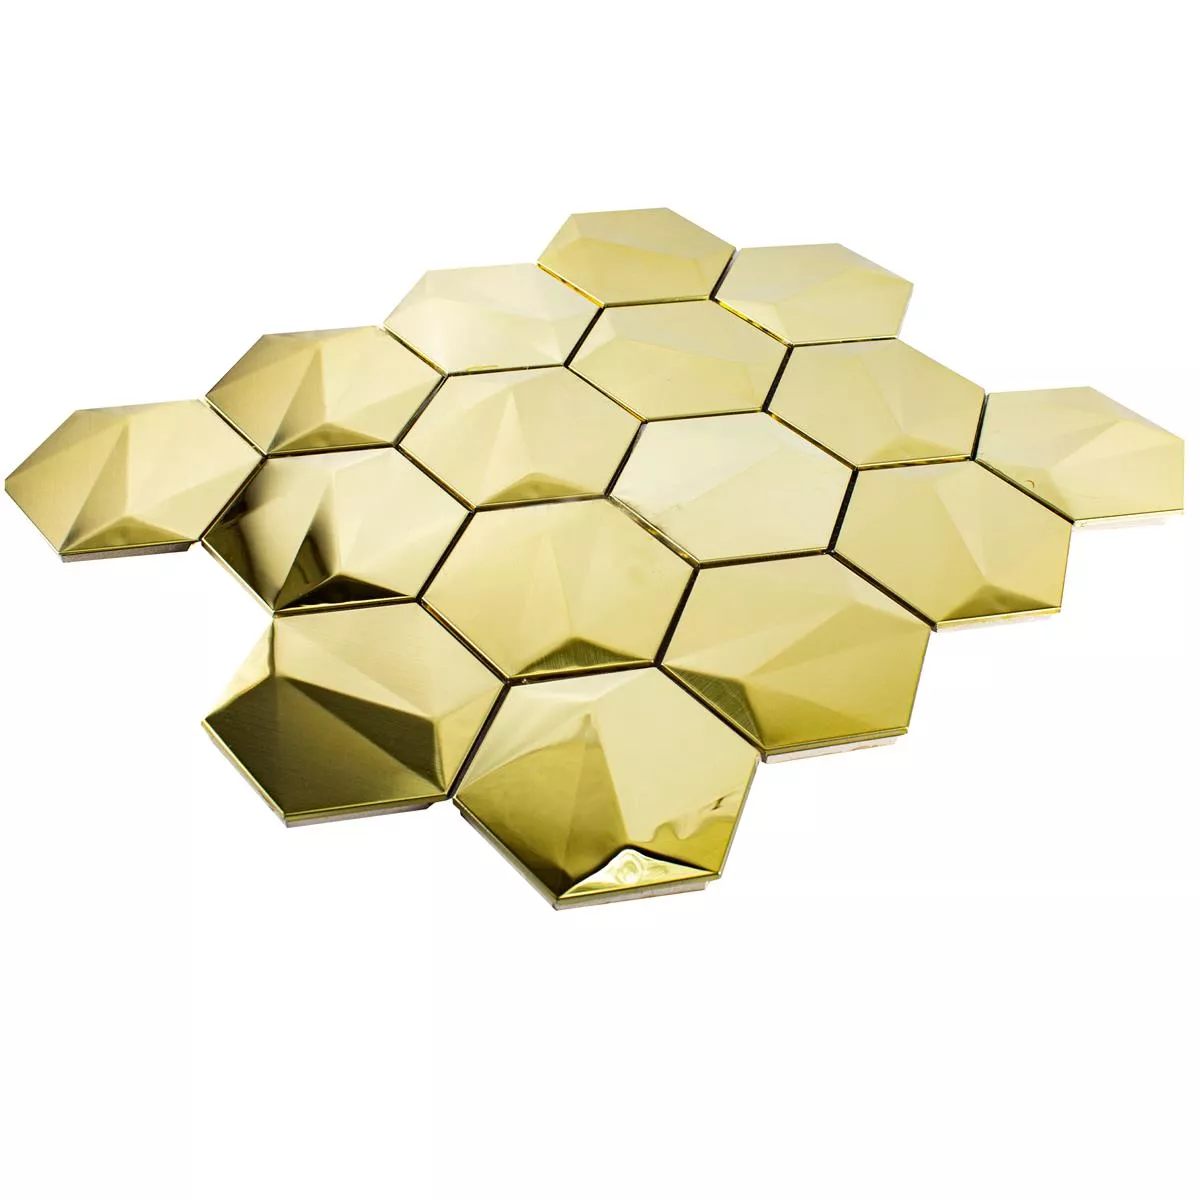 Stainless Steel Mosaic Tiles Durango Hexagon 3D Gold